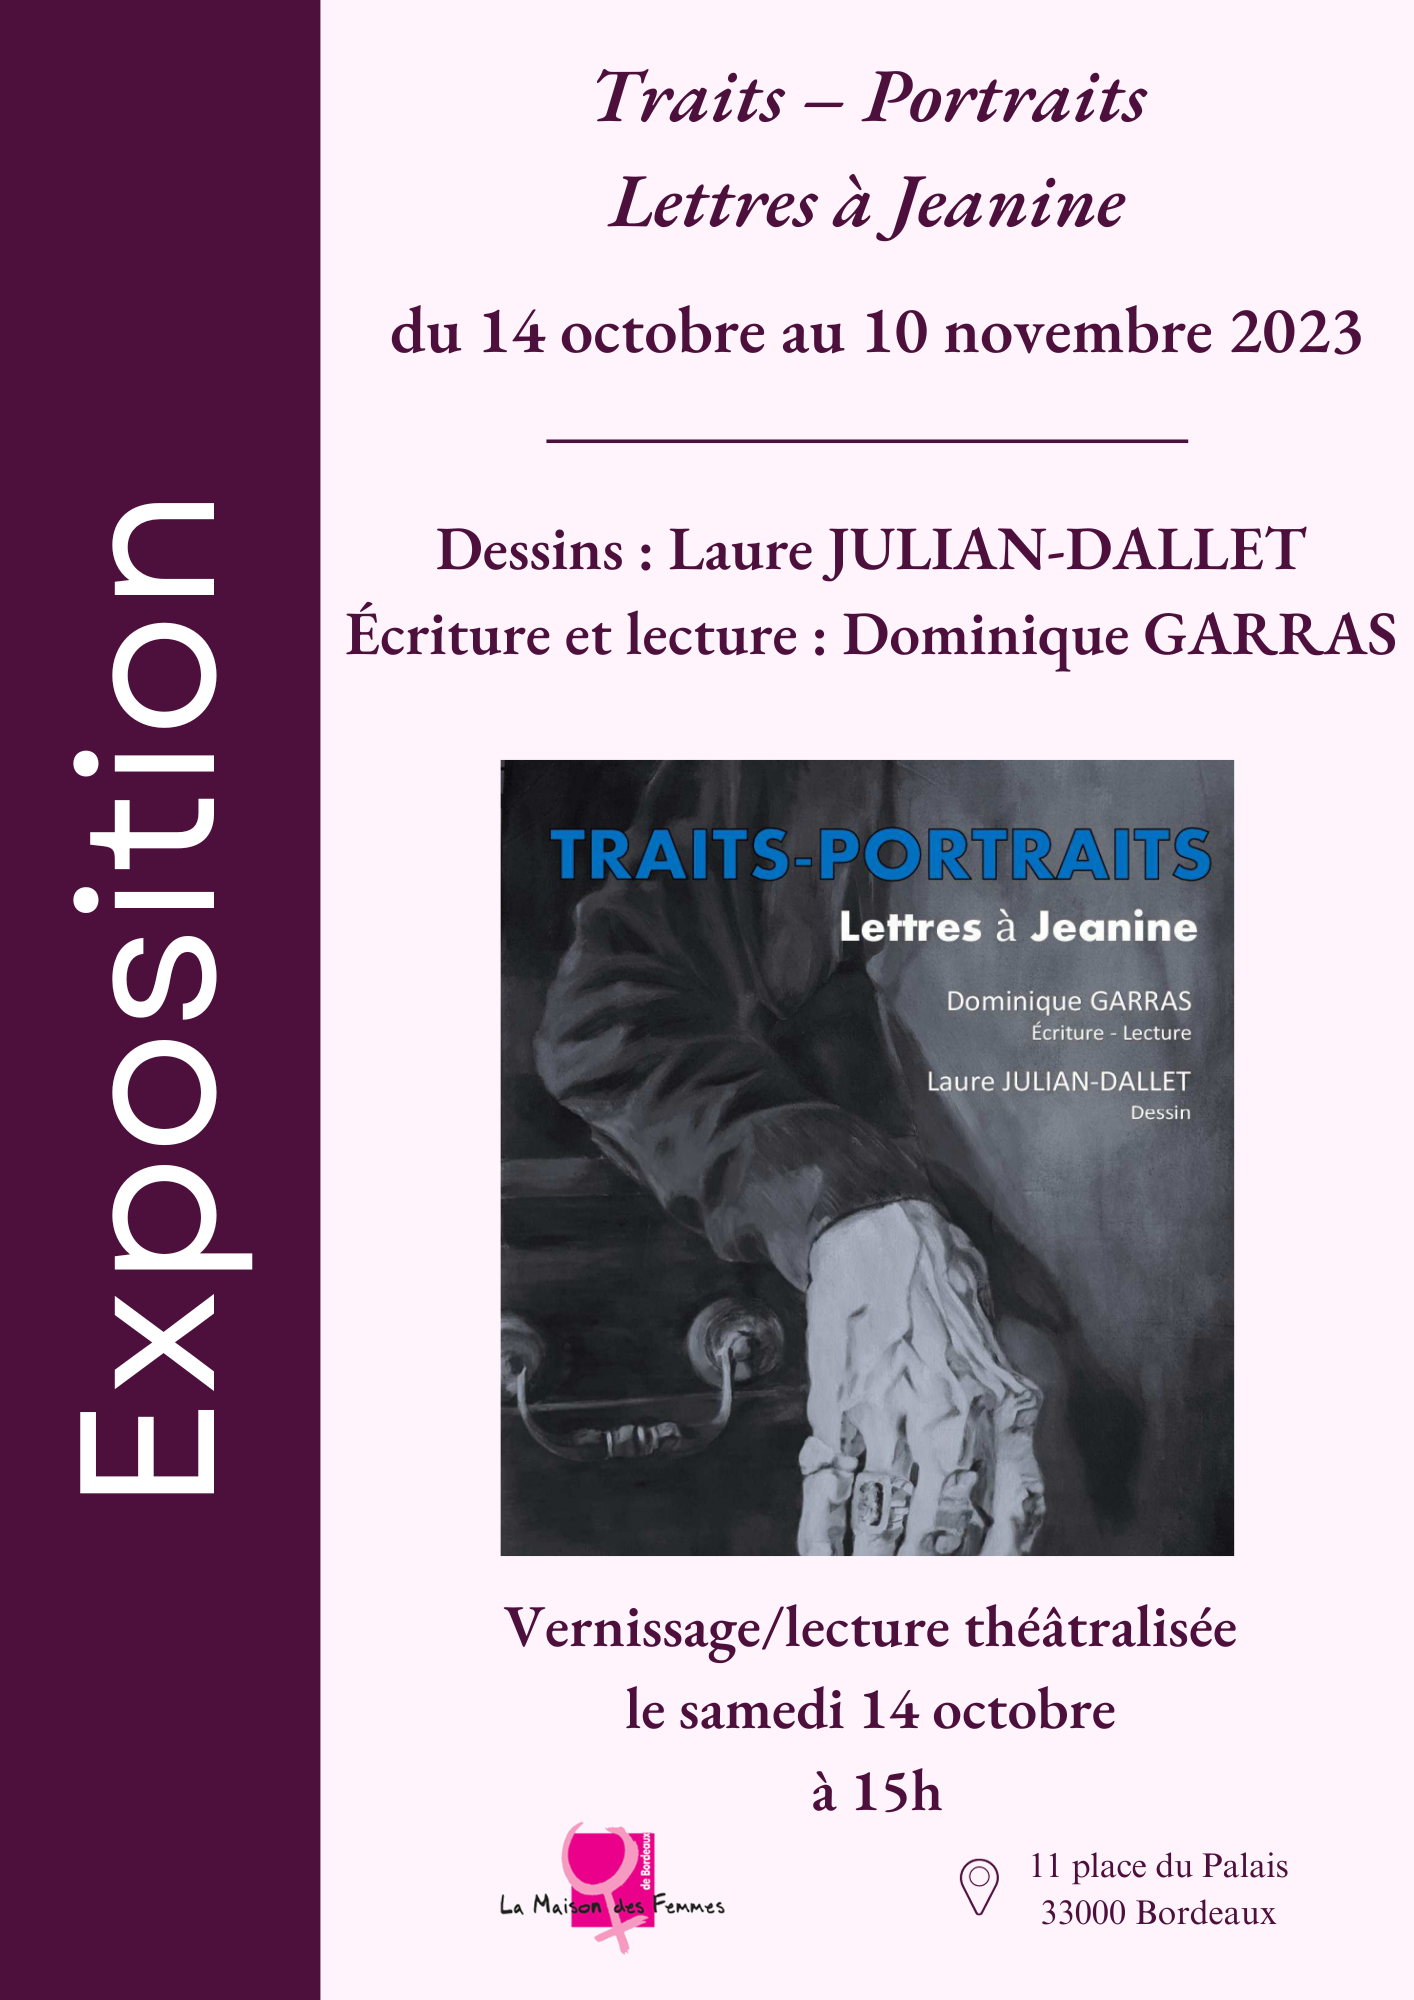 Exposition « Traits-Portraits / Lettres à Jeanine » de Laure JULIAN-DALLET et Dominique GARRAS